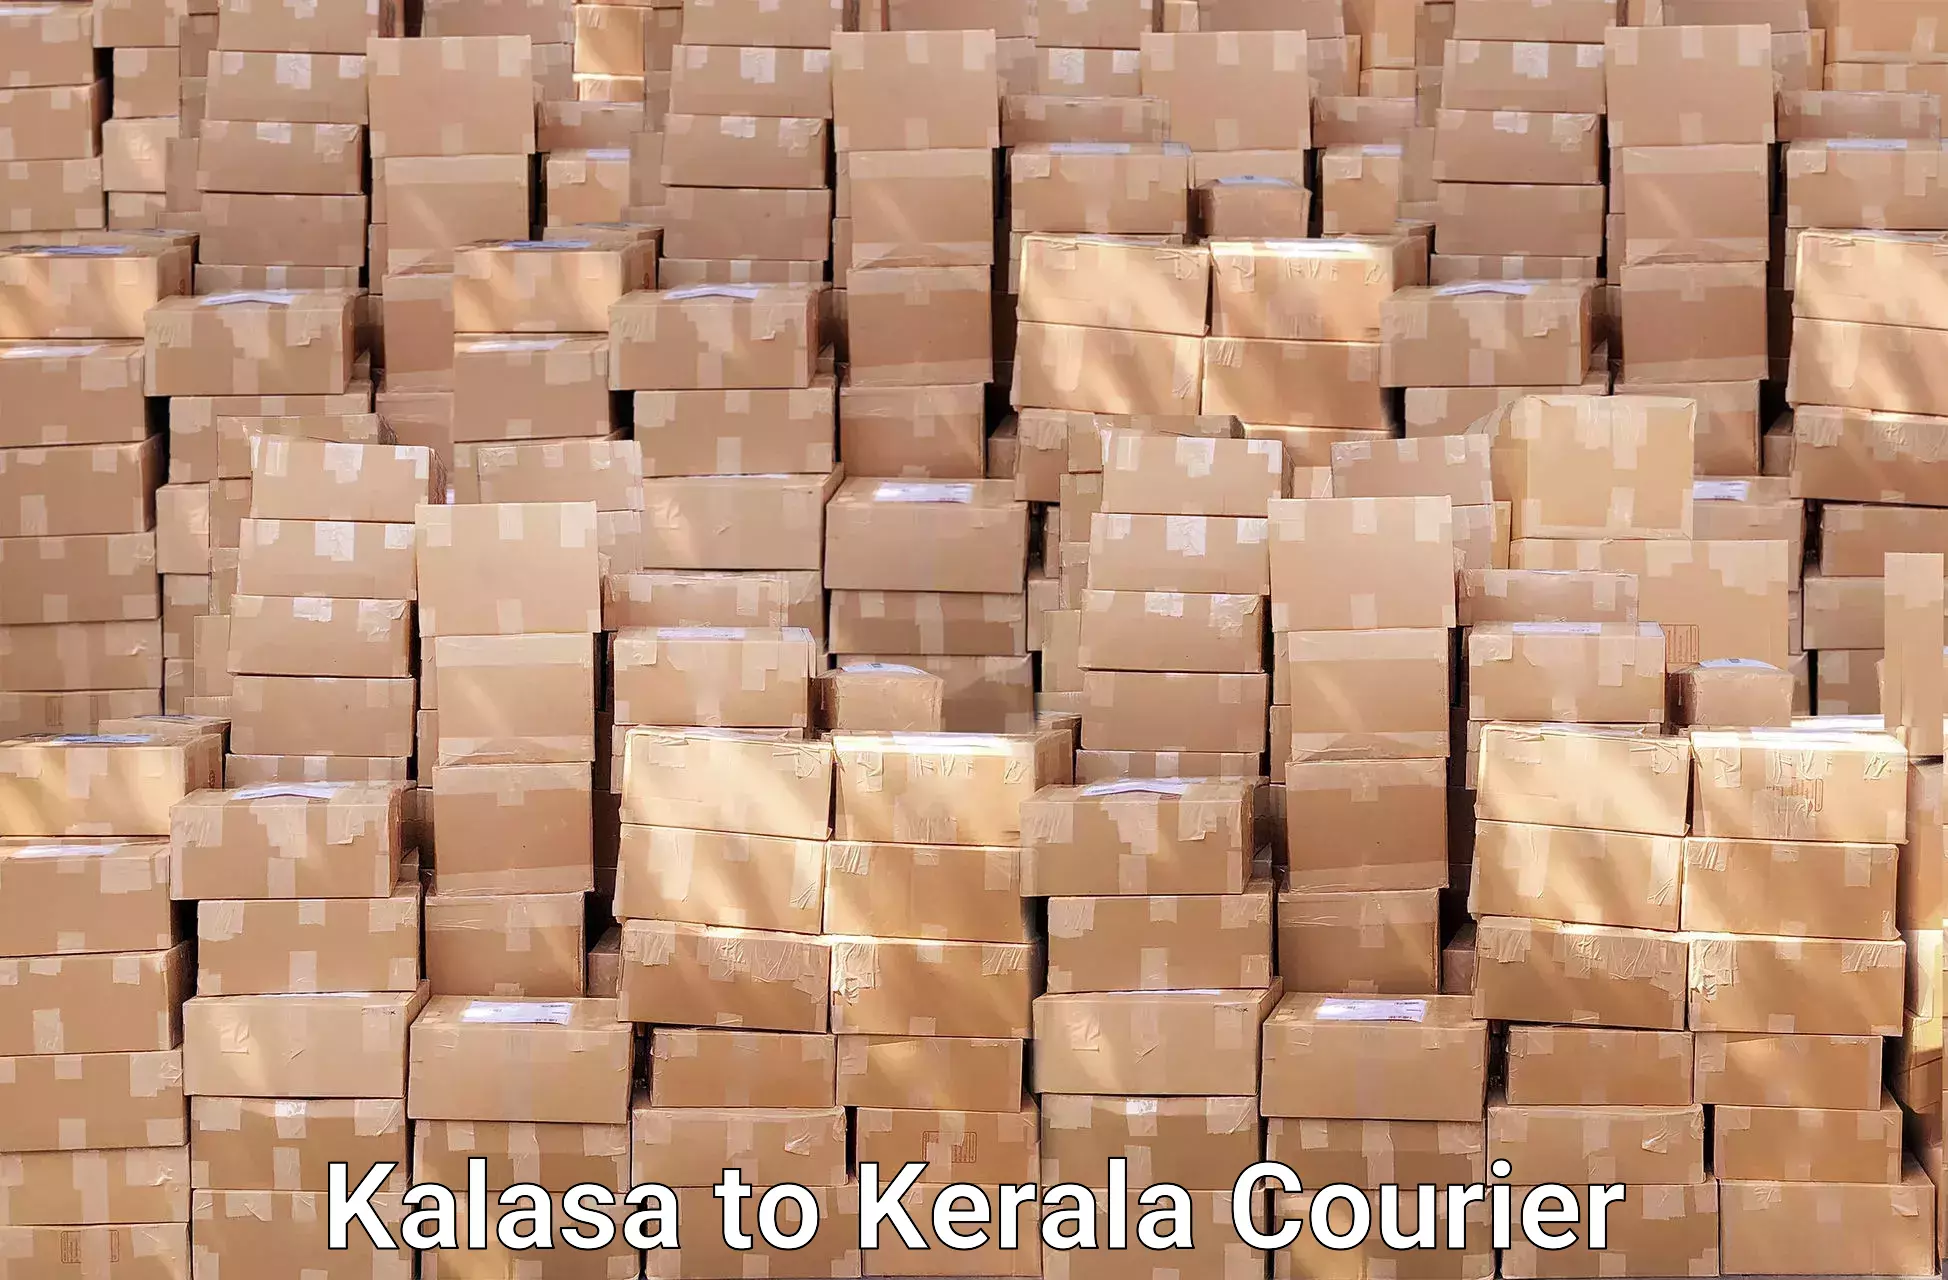 Efficient moving company Kalasa to Chungathara